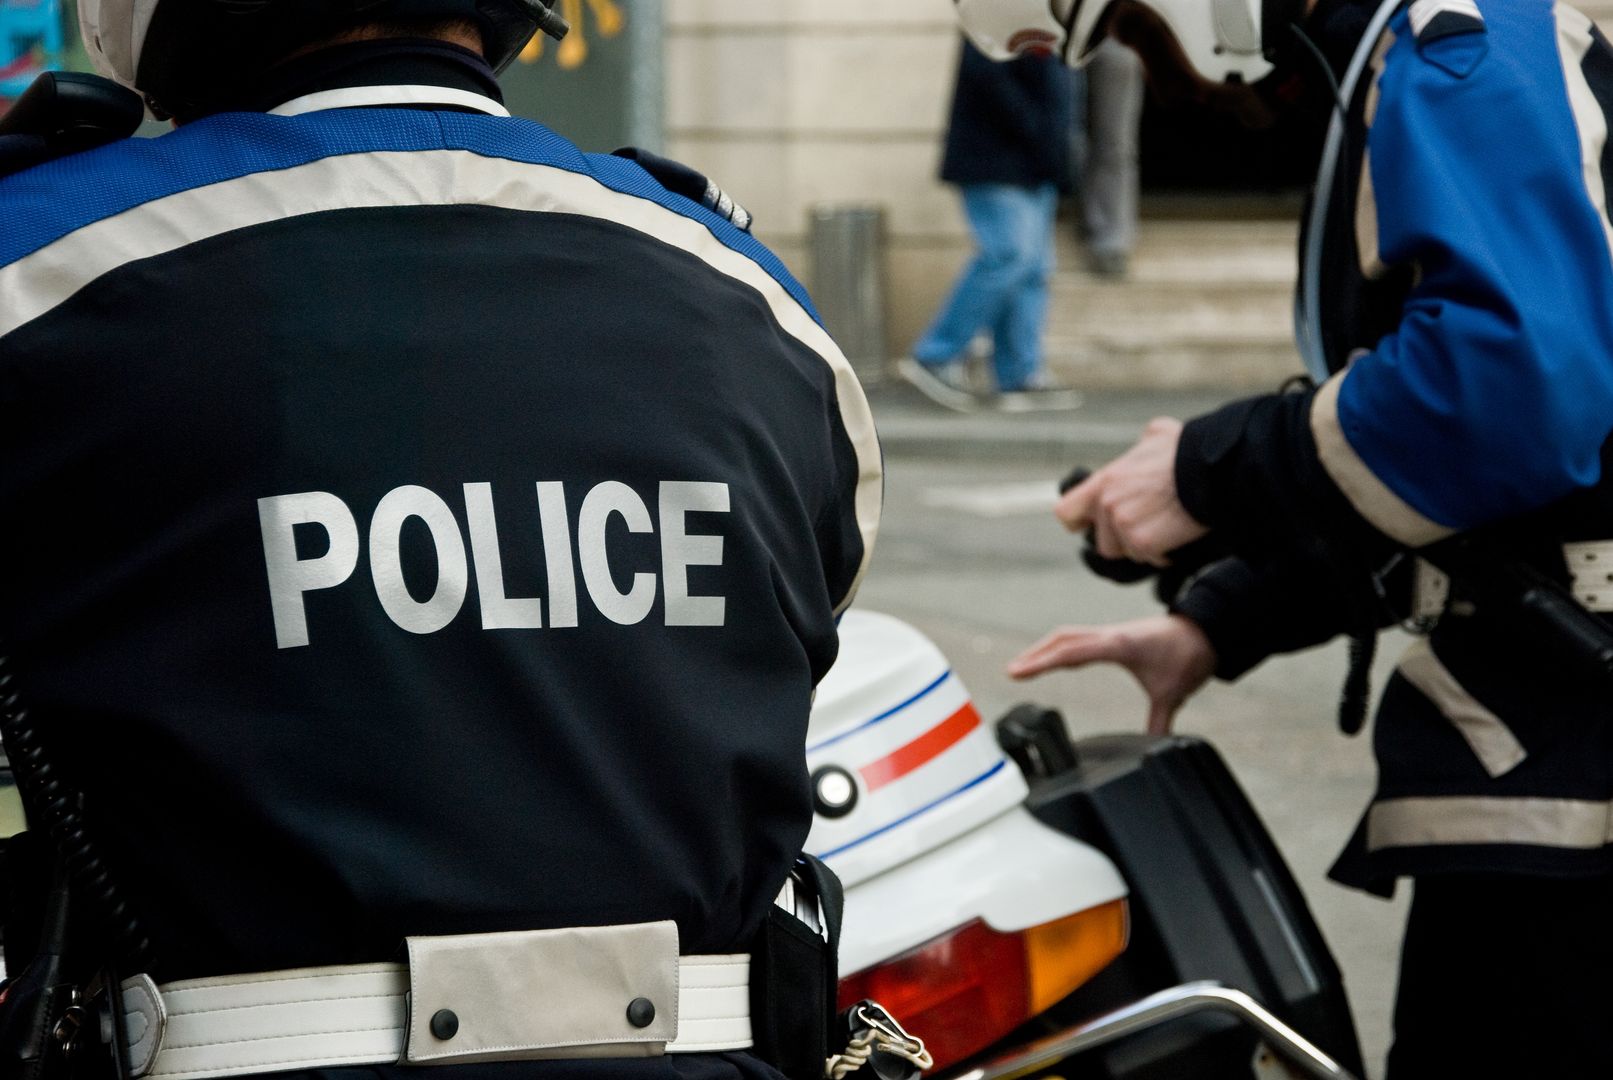 Lyon: ojciec napadniętego chłopca zawiózł sprawców na komisariat. Został oskarżony o porwanie.